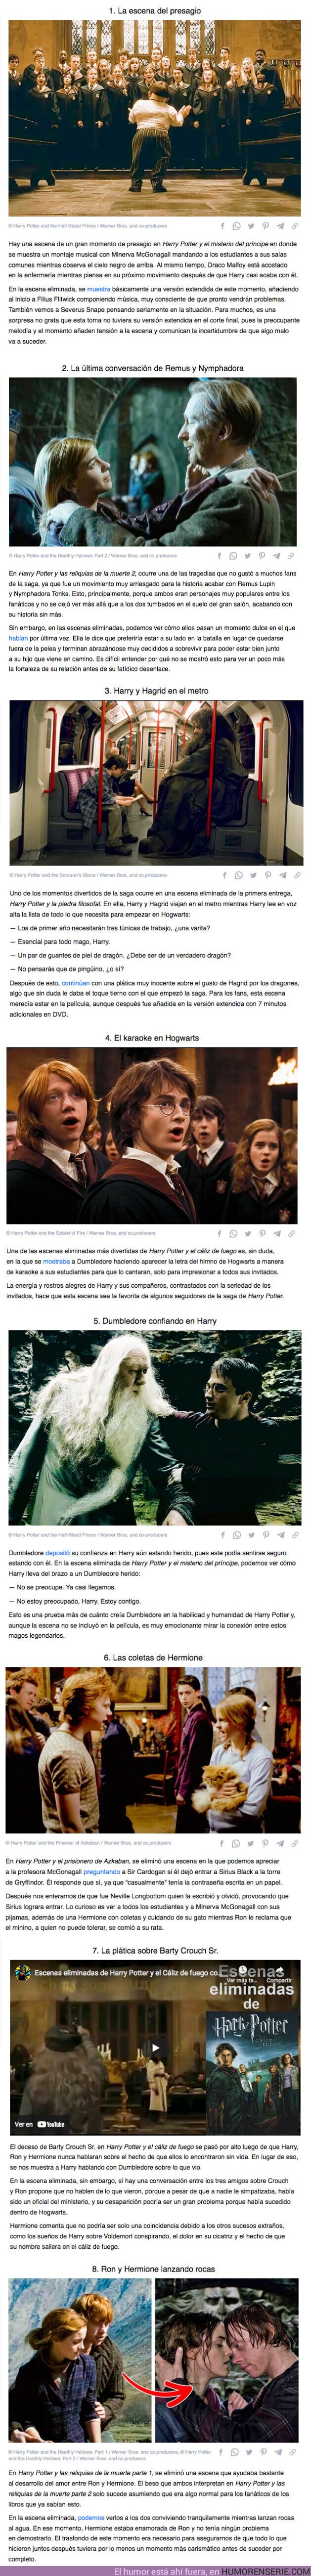 83895 - GALERÍA: 8 Momentos de “Harry Potter” que valía la pena ver, pero fueron siendo eliminados de la saga